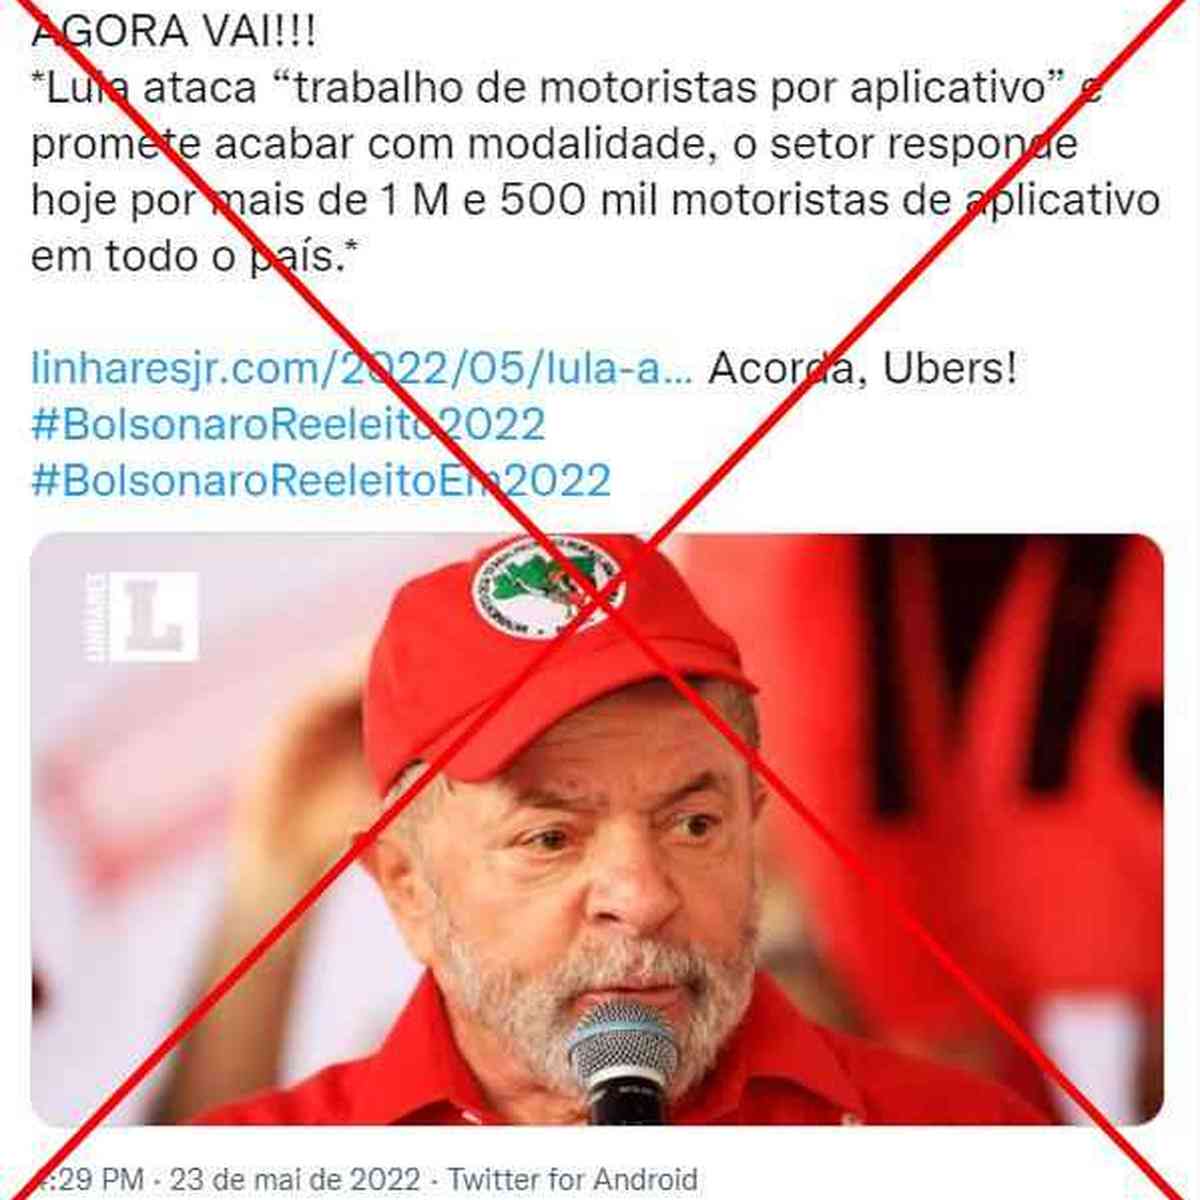 Novo Aplicativo Jogo de Lula: App paga de verdade?